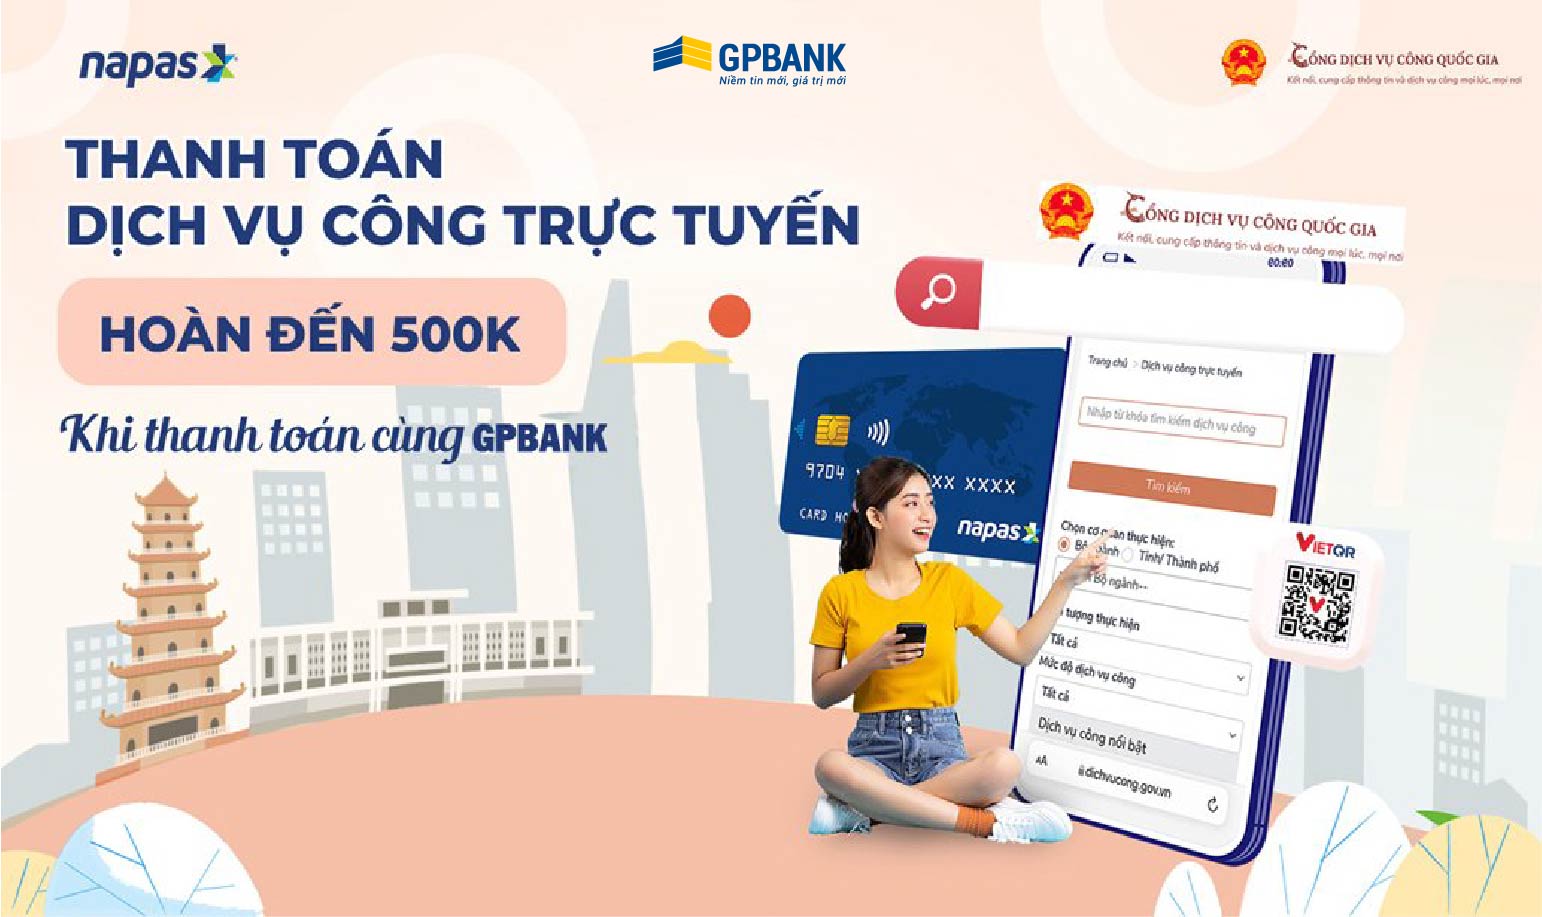 Thanh toán trực tuyến Dịch vụ công quốc gia - GPBank hoàn lên đến 500k